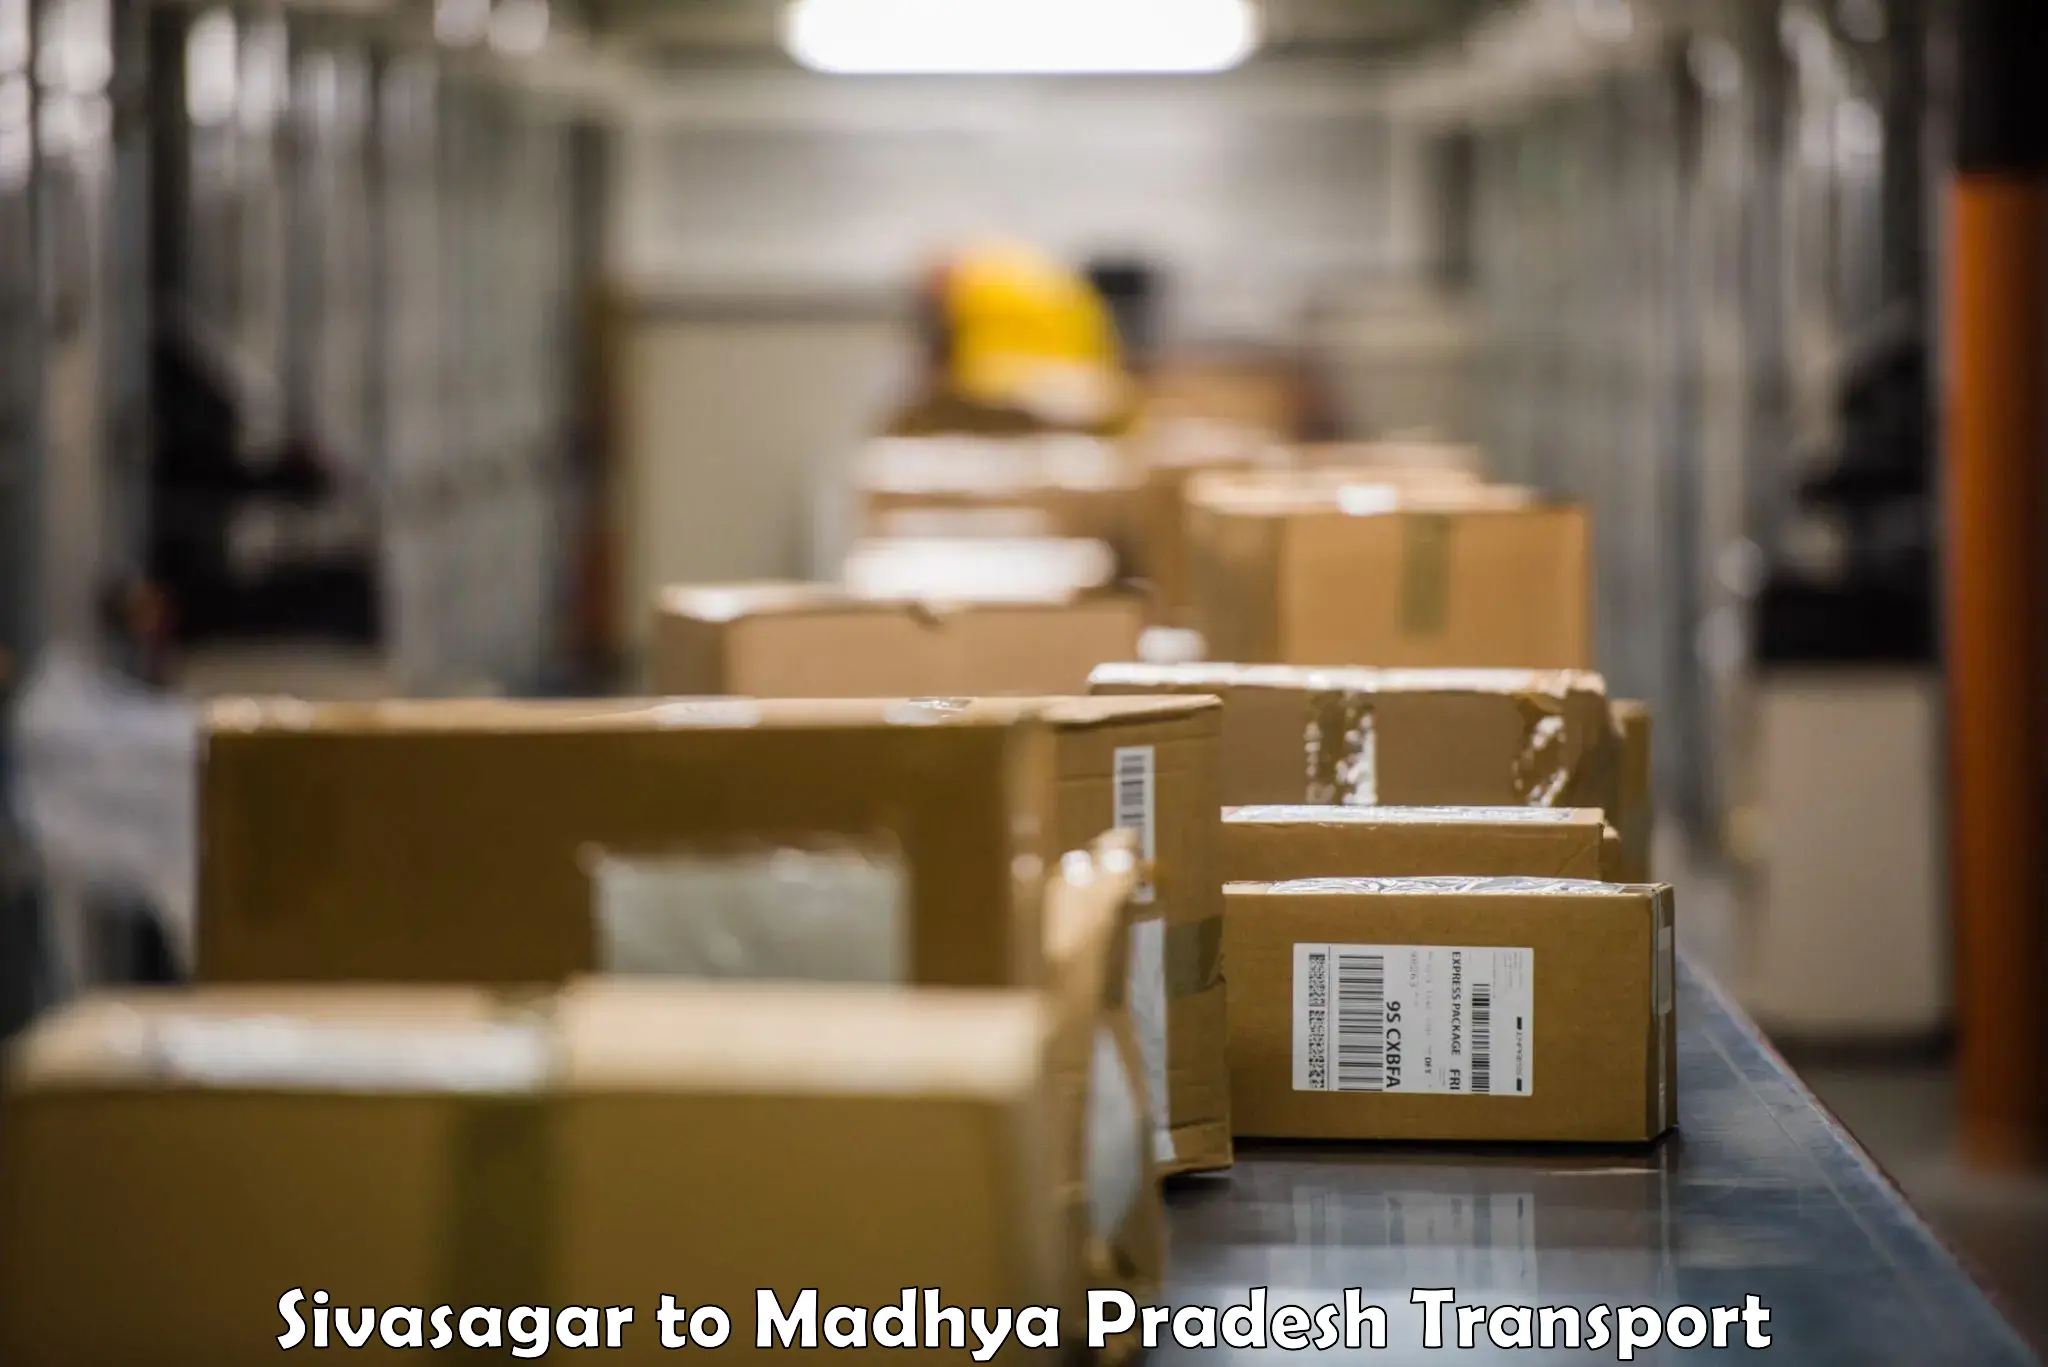 Bike shipping service Sivasagar to IIIT Bhopal